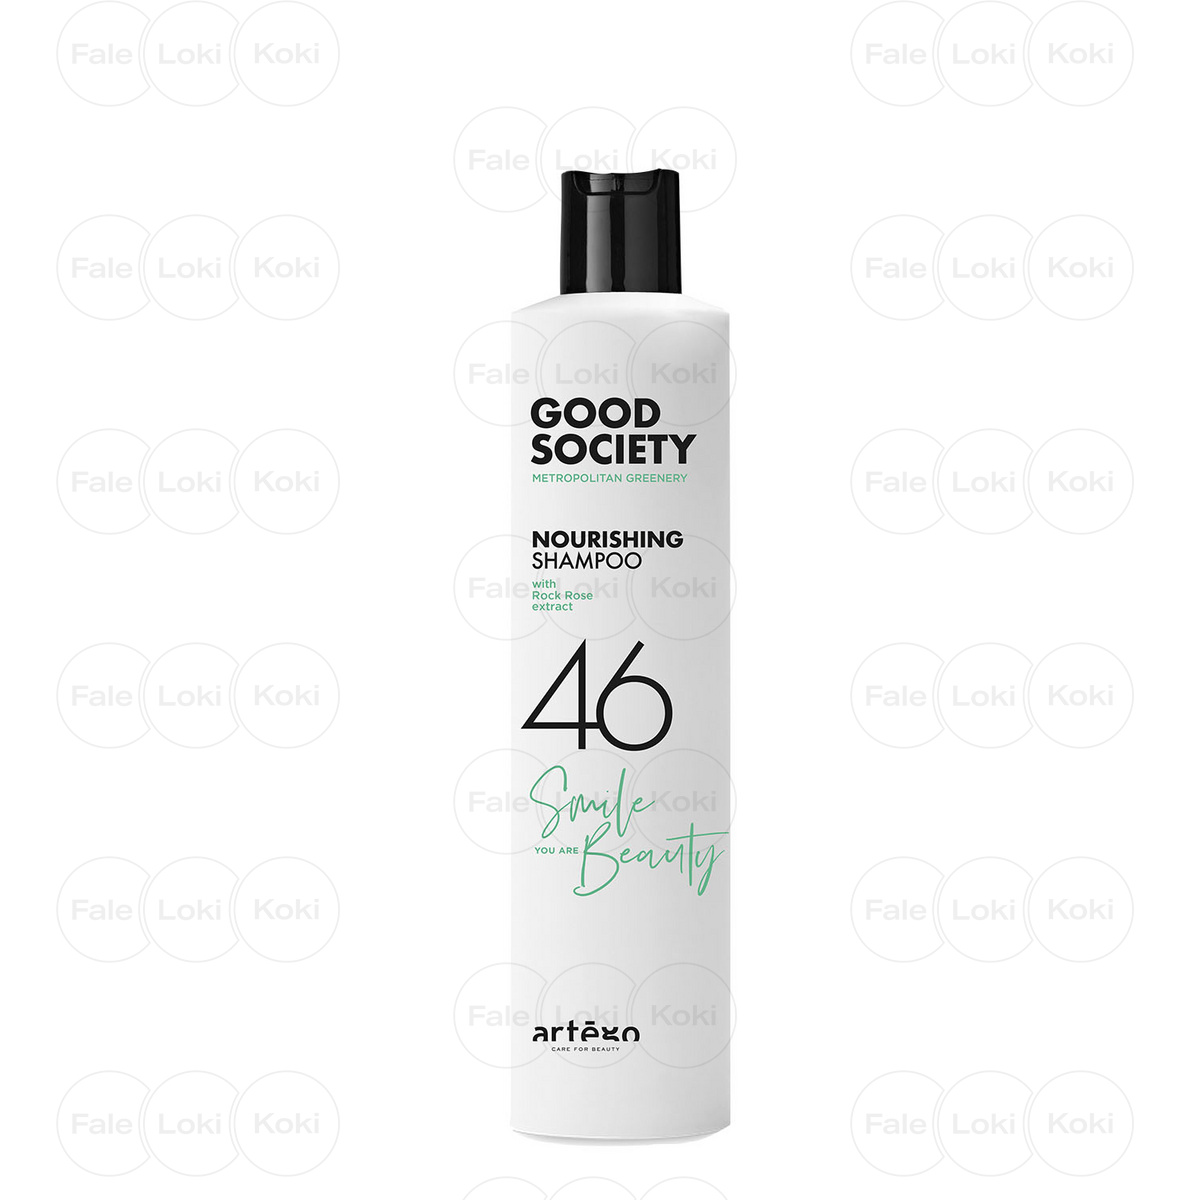 ARTEGO GOOD SOCIETY szampon regenerujący z kwasem hialuronowym 46 NOURISHING SHAMPOO 250 ml